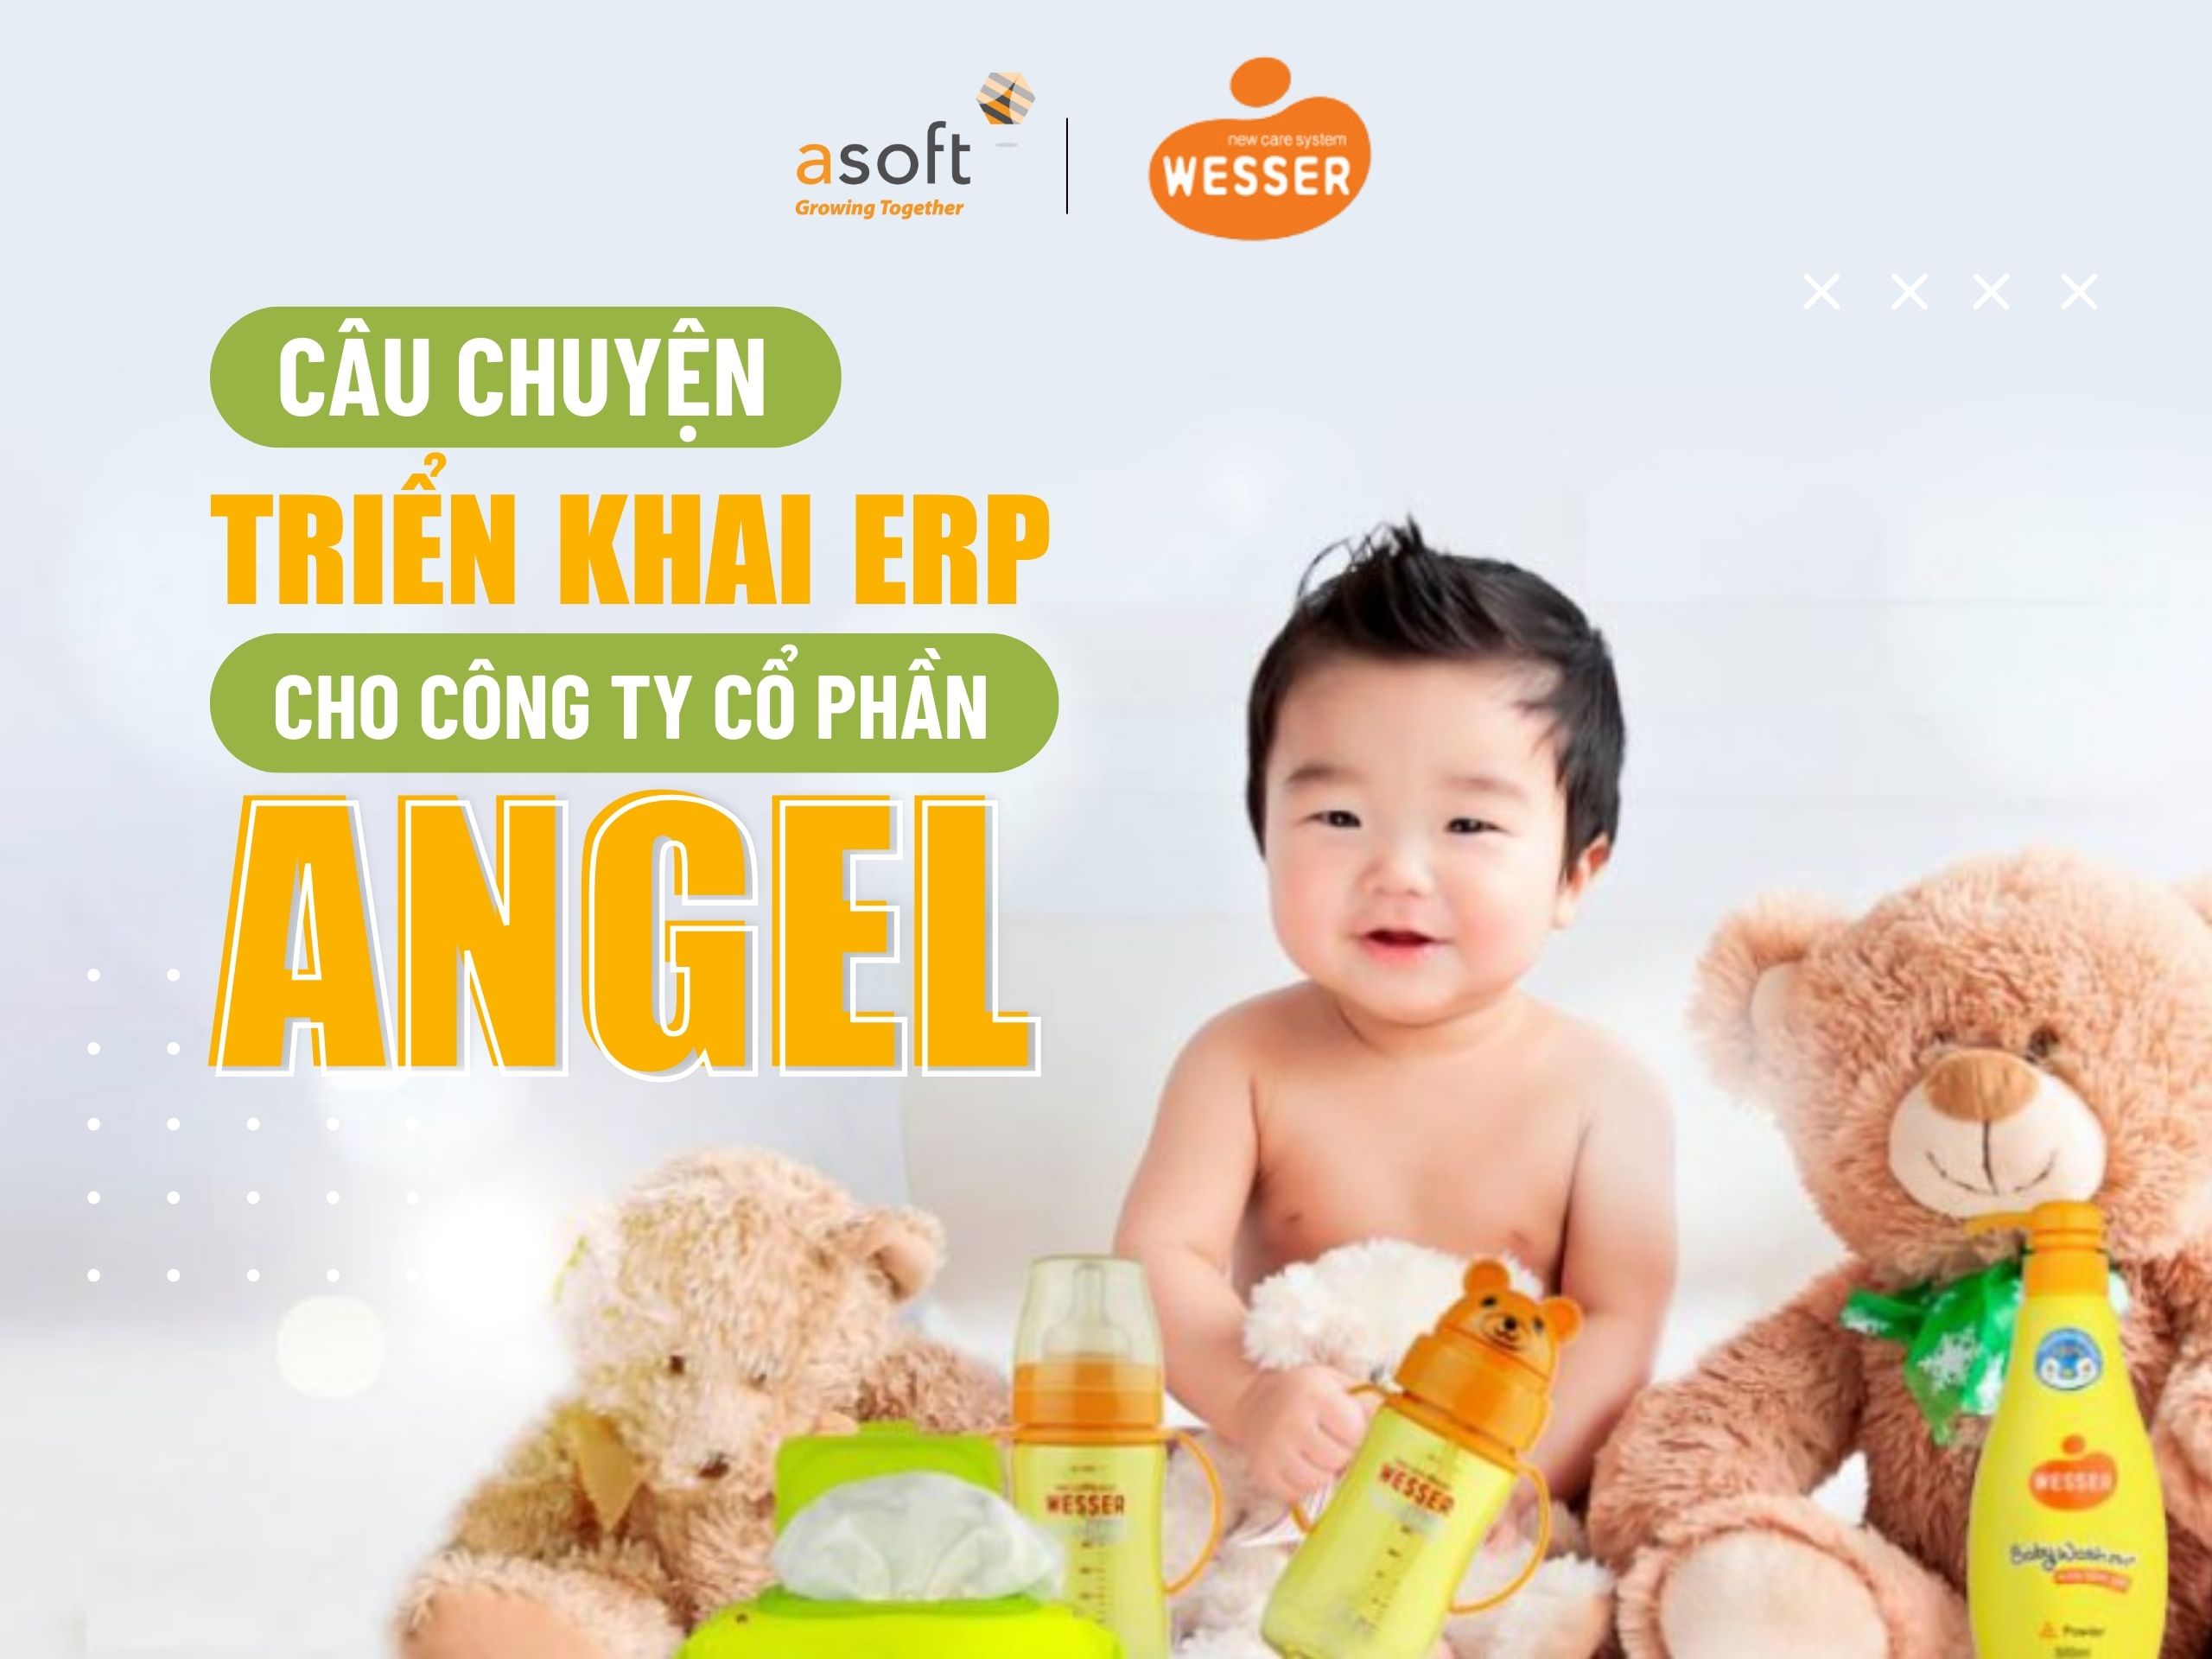 Câu chuyện triển khai ERP cho Công ty Cổ phần Angel (Wesser) Việt Nam